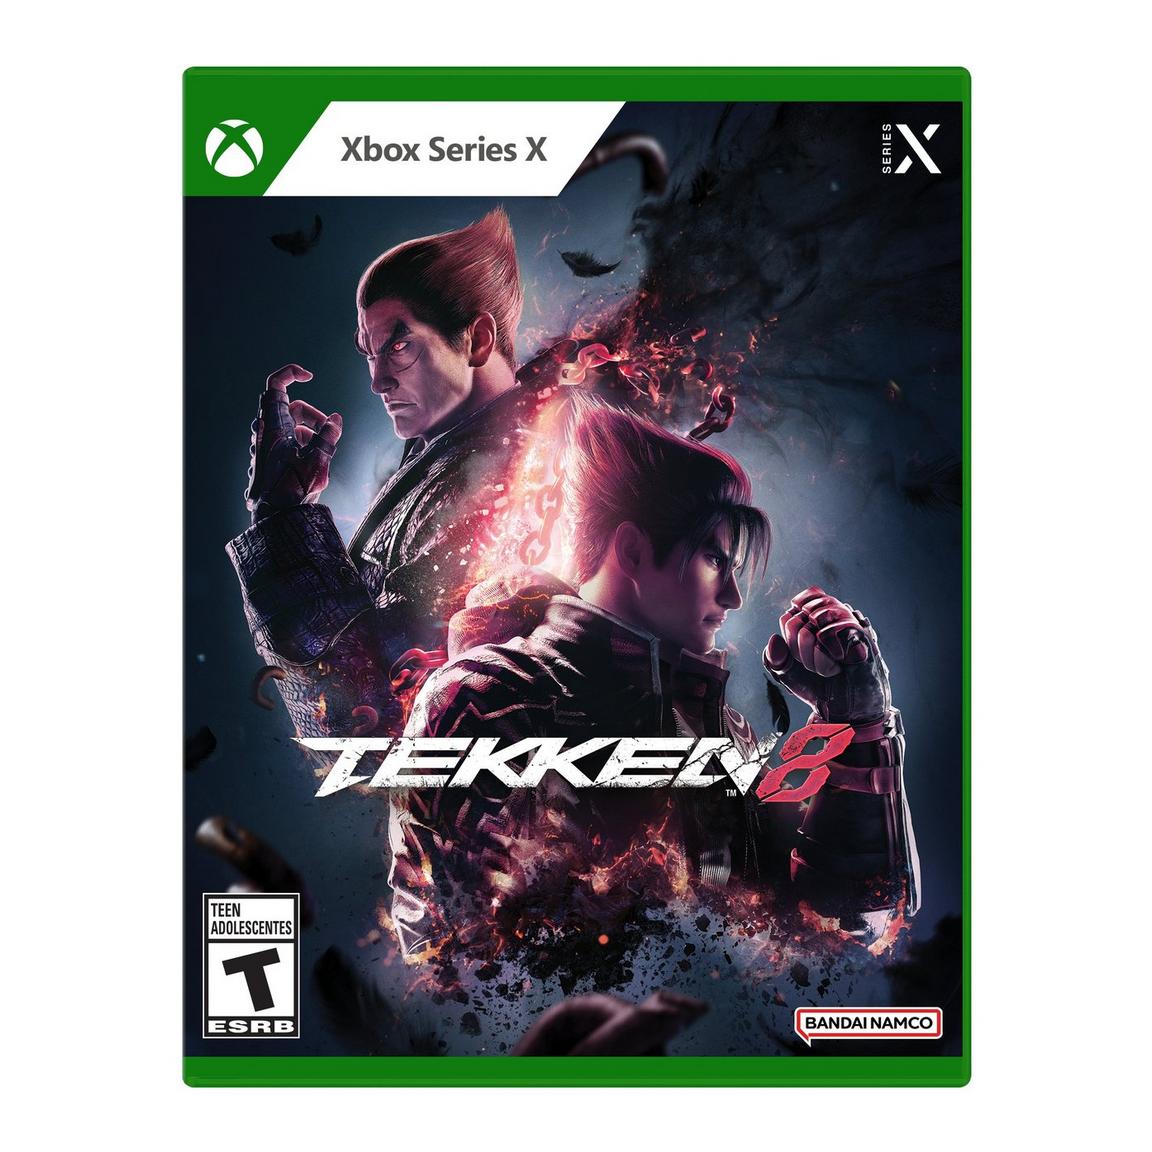 Видеоигра Tekken 8 - Xbox Series X видеоигра unicorn overlord xbox series x